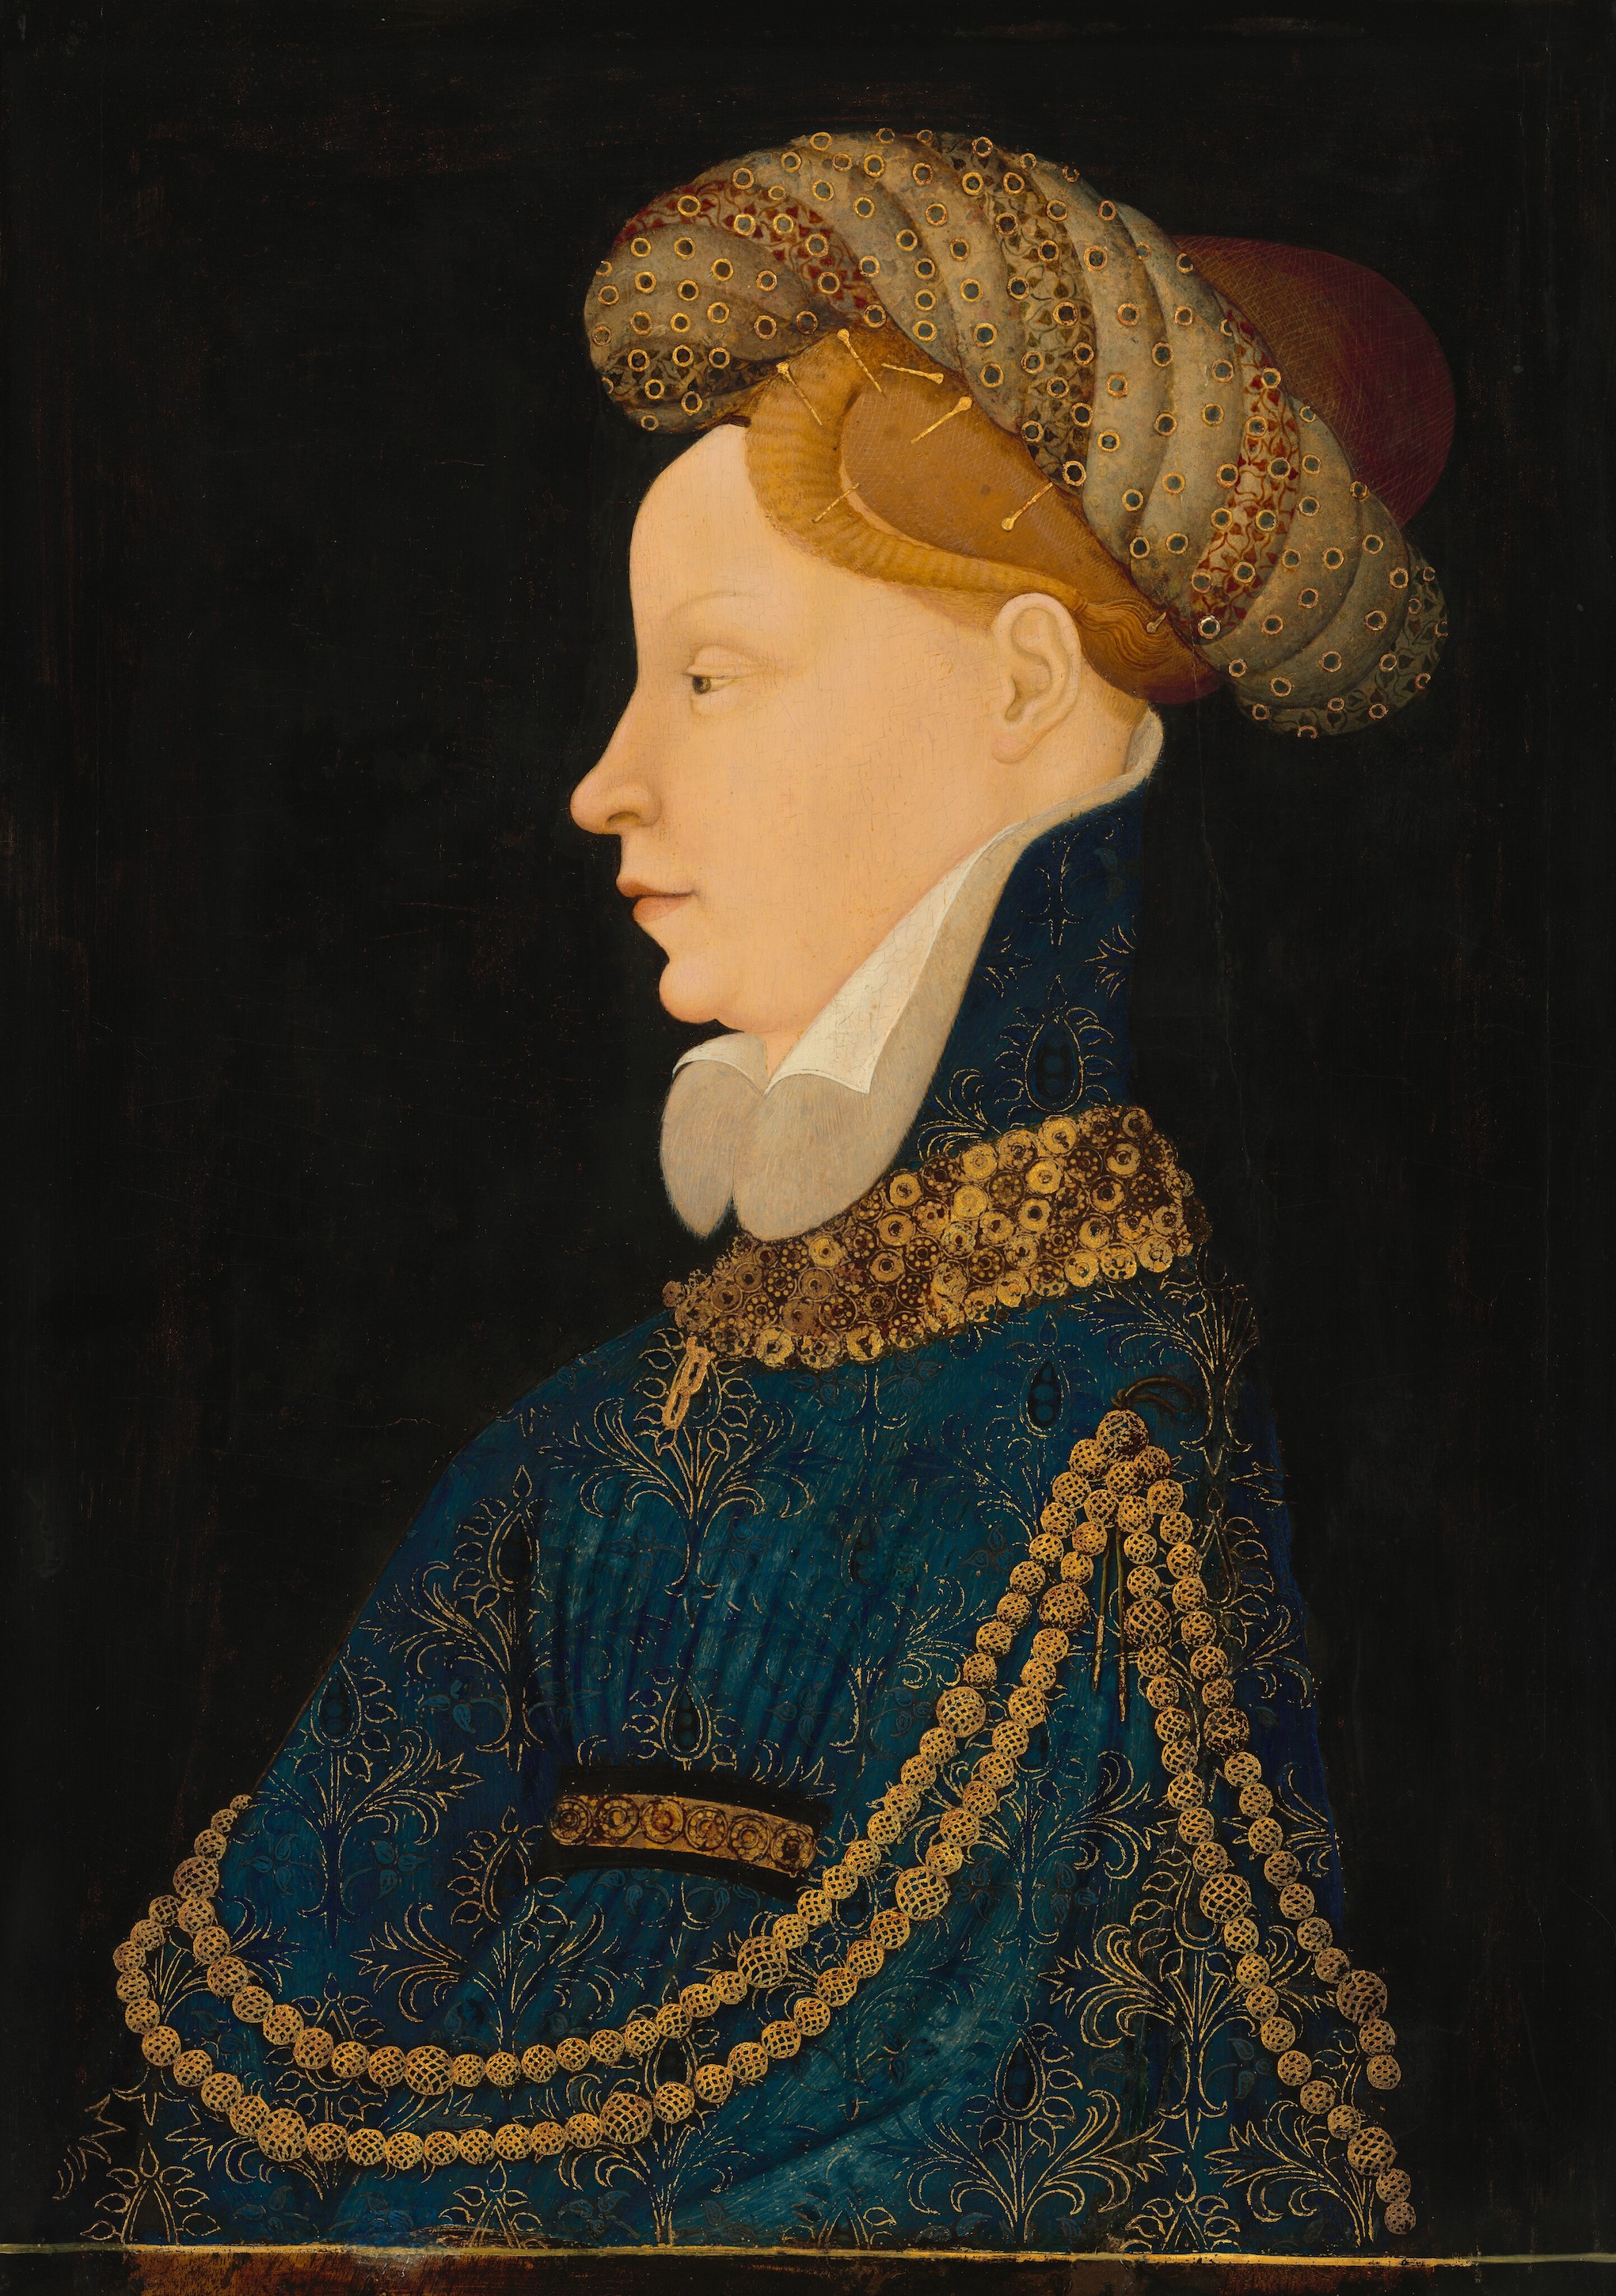 Retrato de perfil de una dama by Artista anónimo  - c. 1410 - 52 x 36,6 cm National Gallery of Art